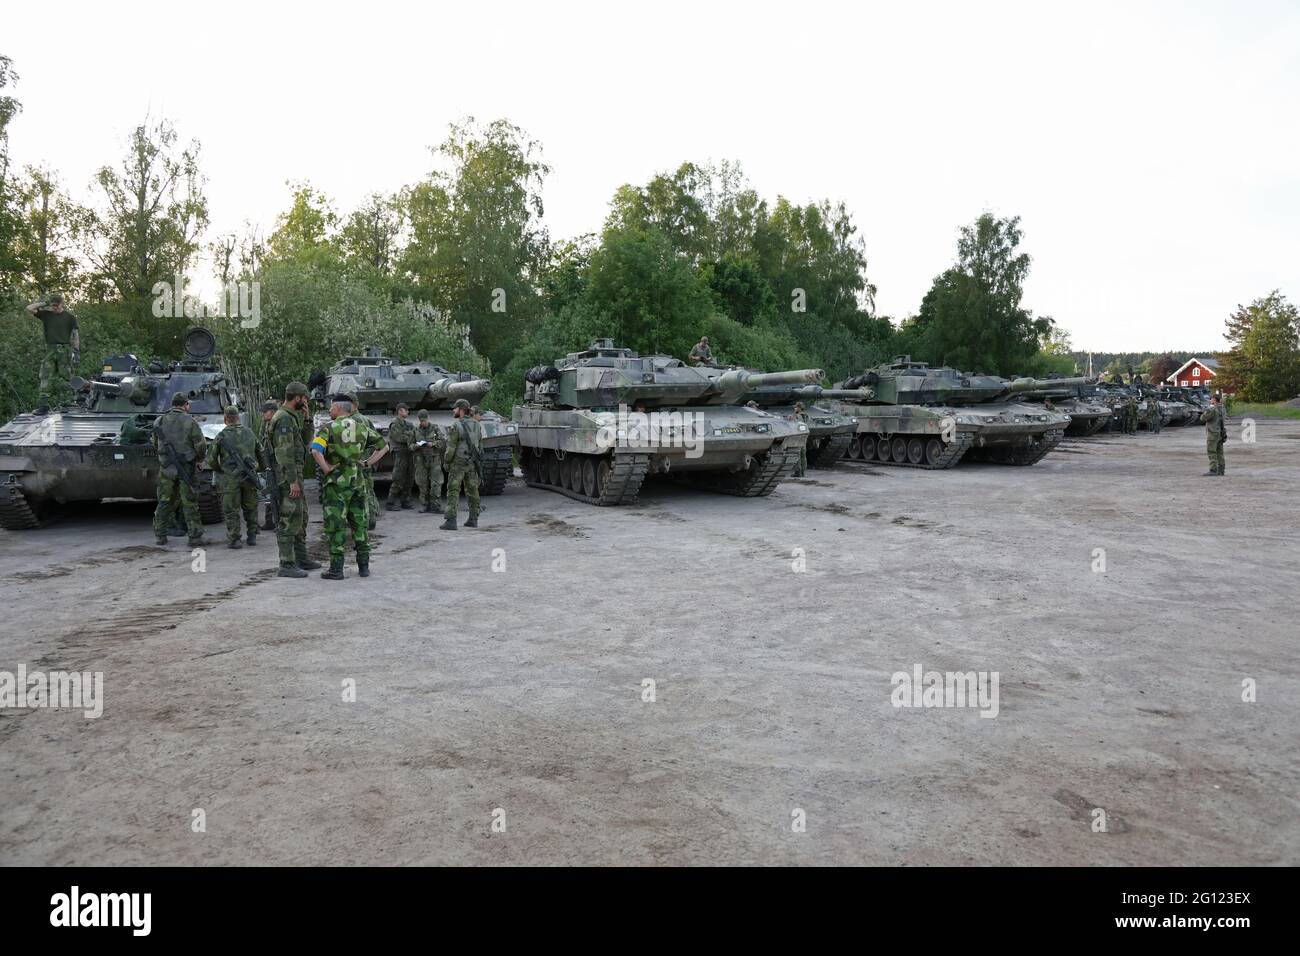 Die gepanzerten Fahrzeuge der schwedischen Armee während einer Militärübung  in Borensberg, Schweden Stockfotografie - Alamy